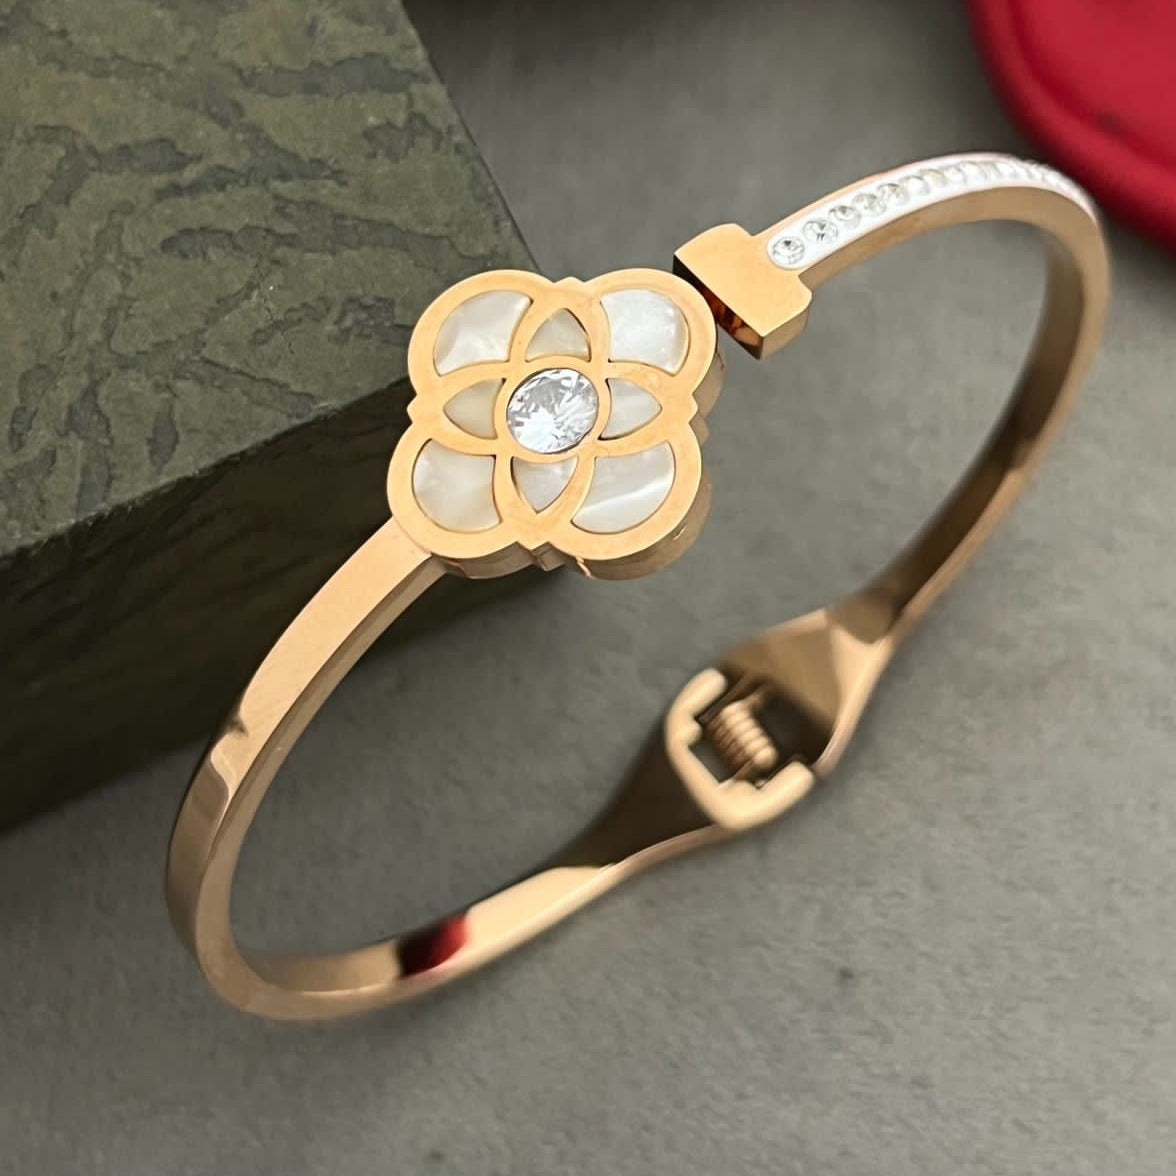 Cartier LOVE Bracelet: A Small Token of Eternal Affection for Women